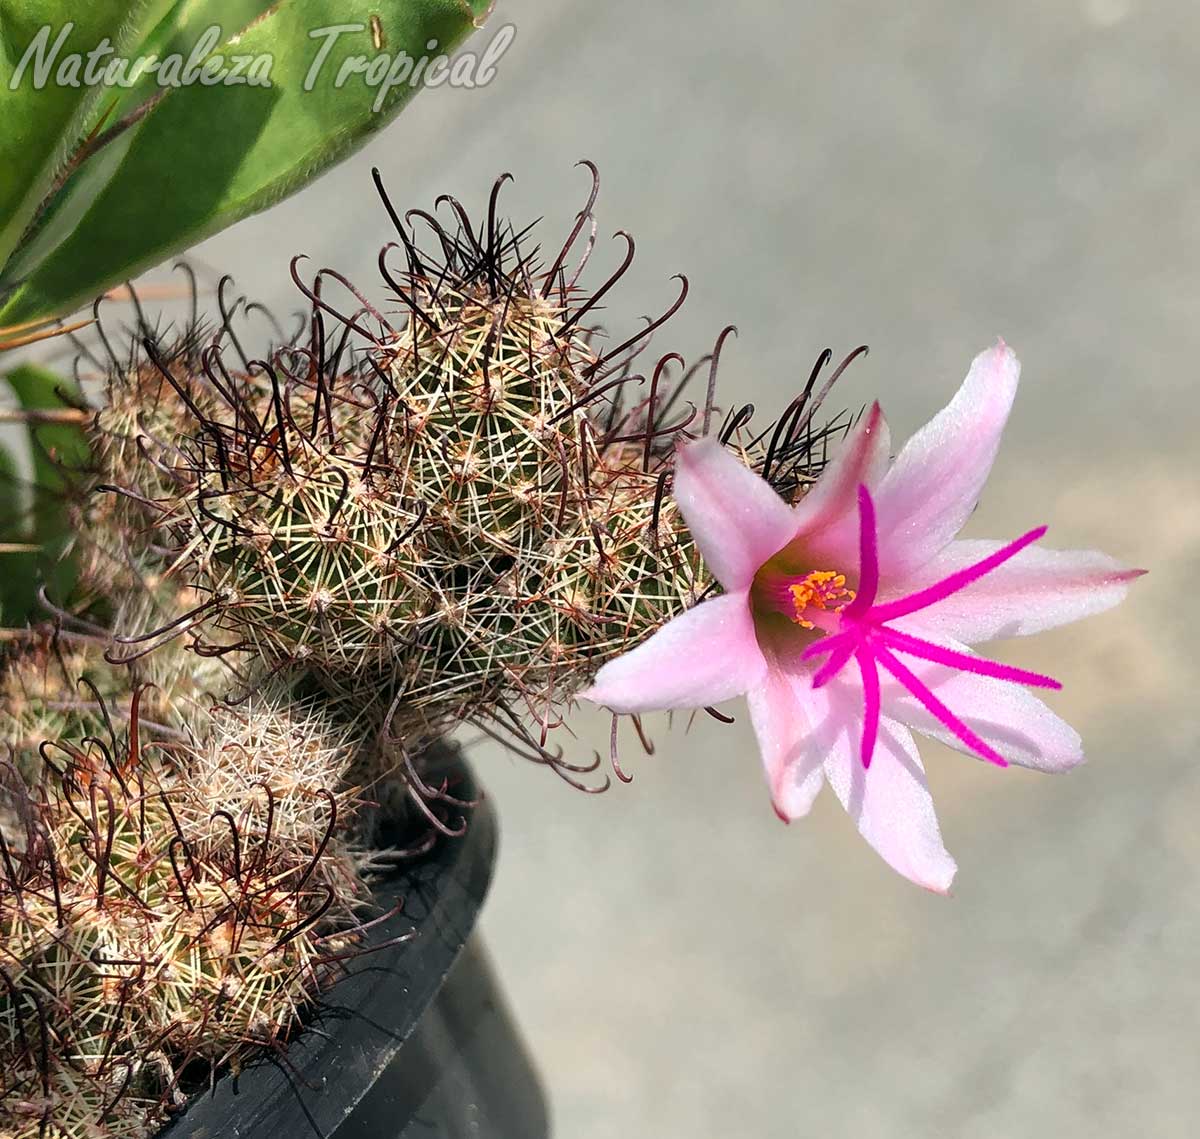 Flor y tallos del cactus Mammillaria thornberi (Cochemiea thornberi)